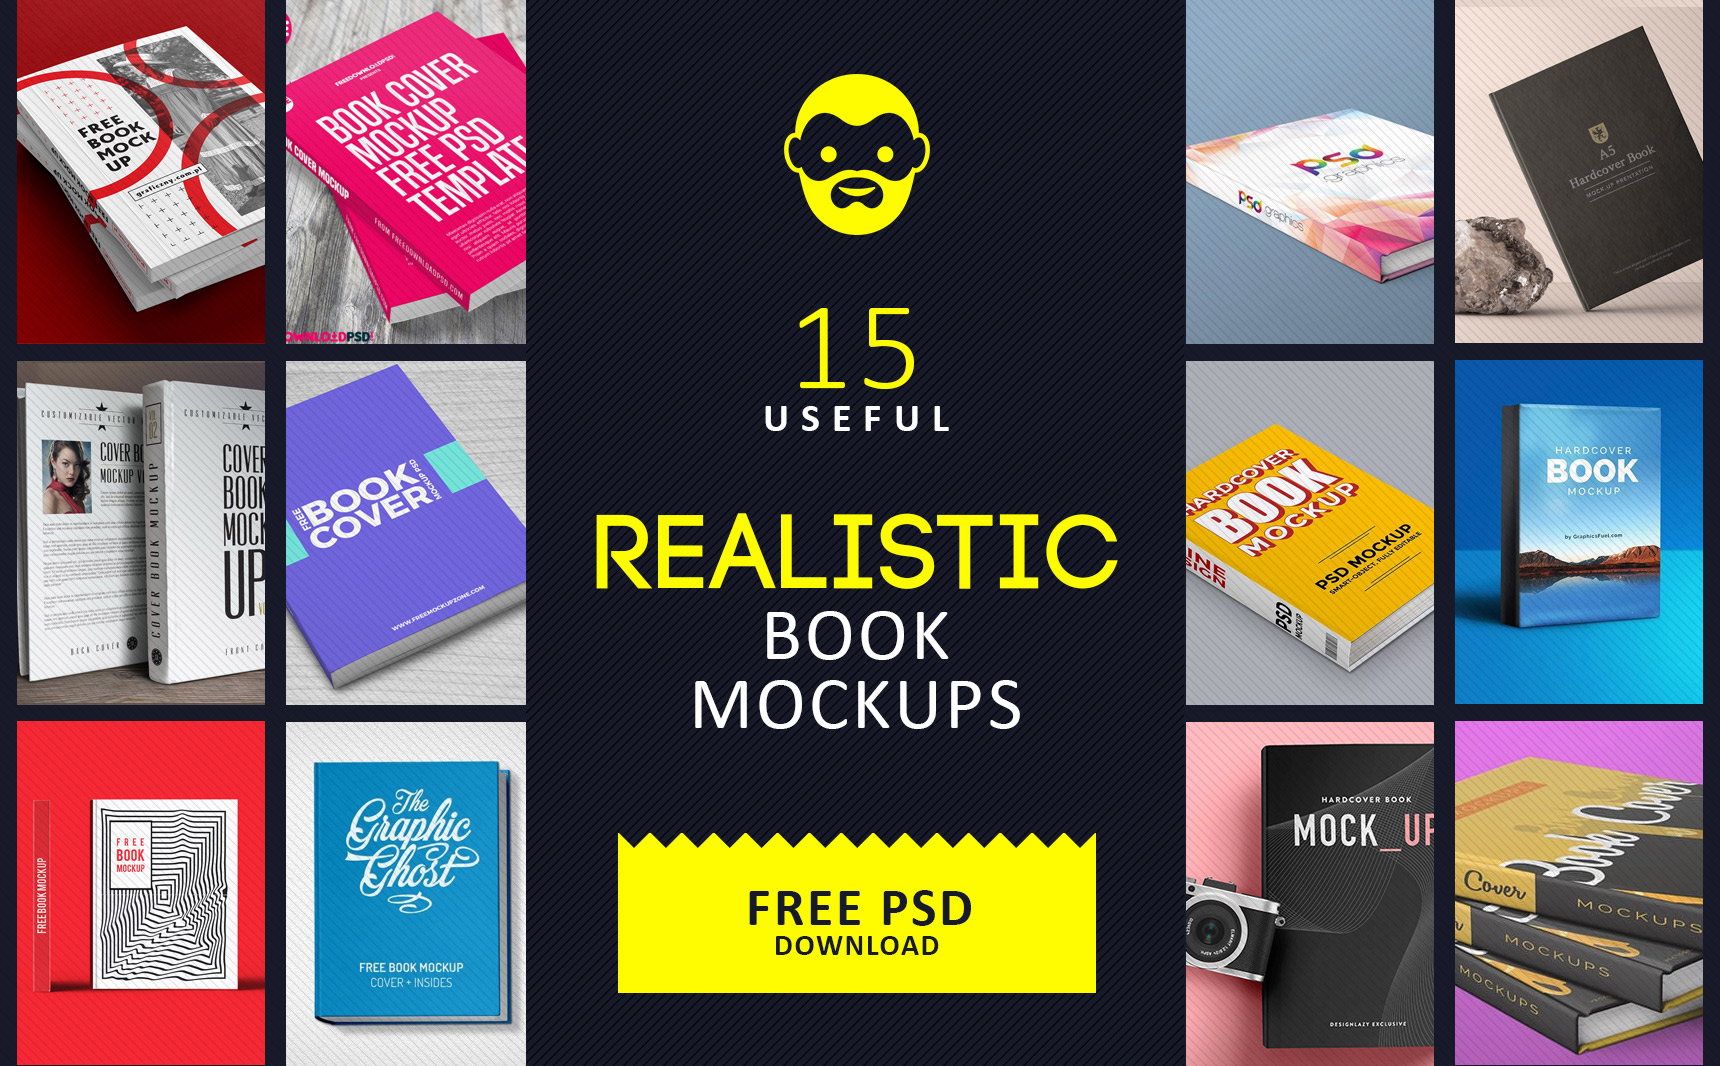 Download Free Ebook Cover Creator/ Book Mockup Generator - Free ...